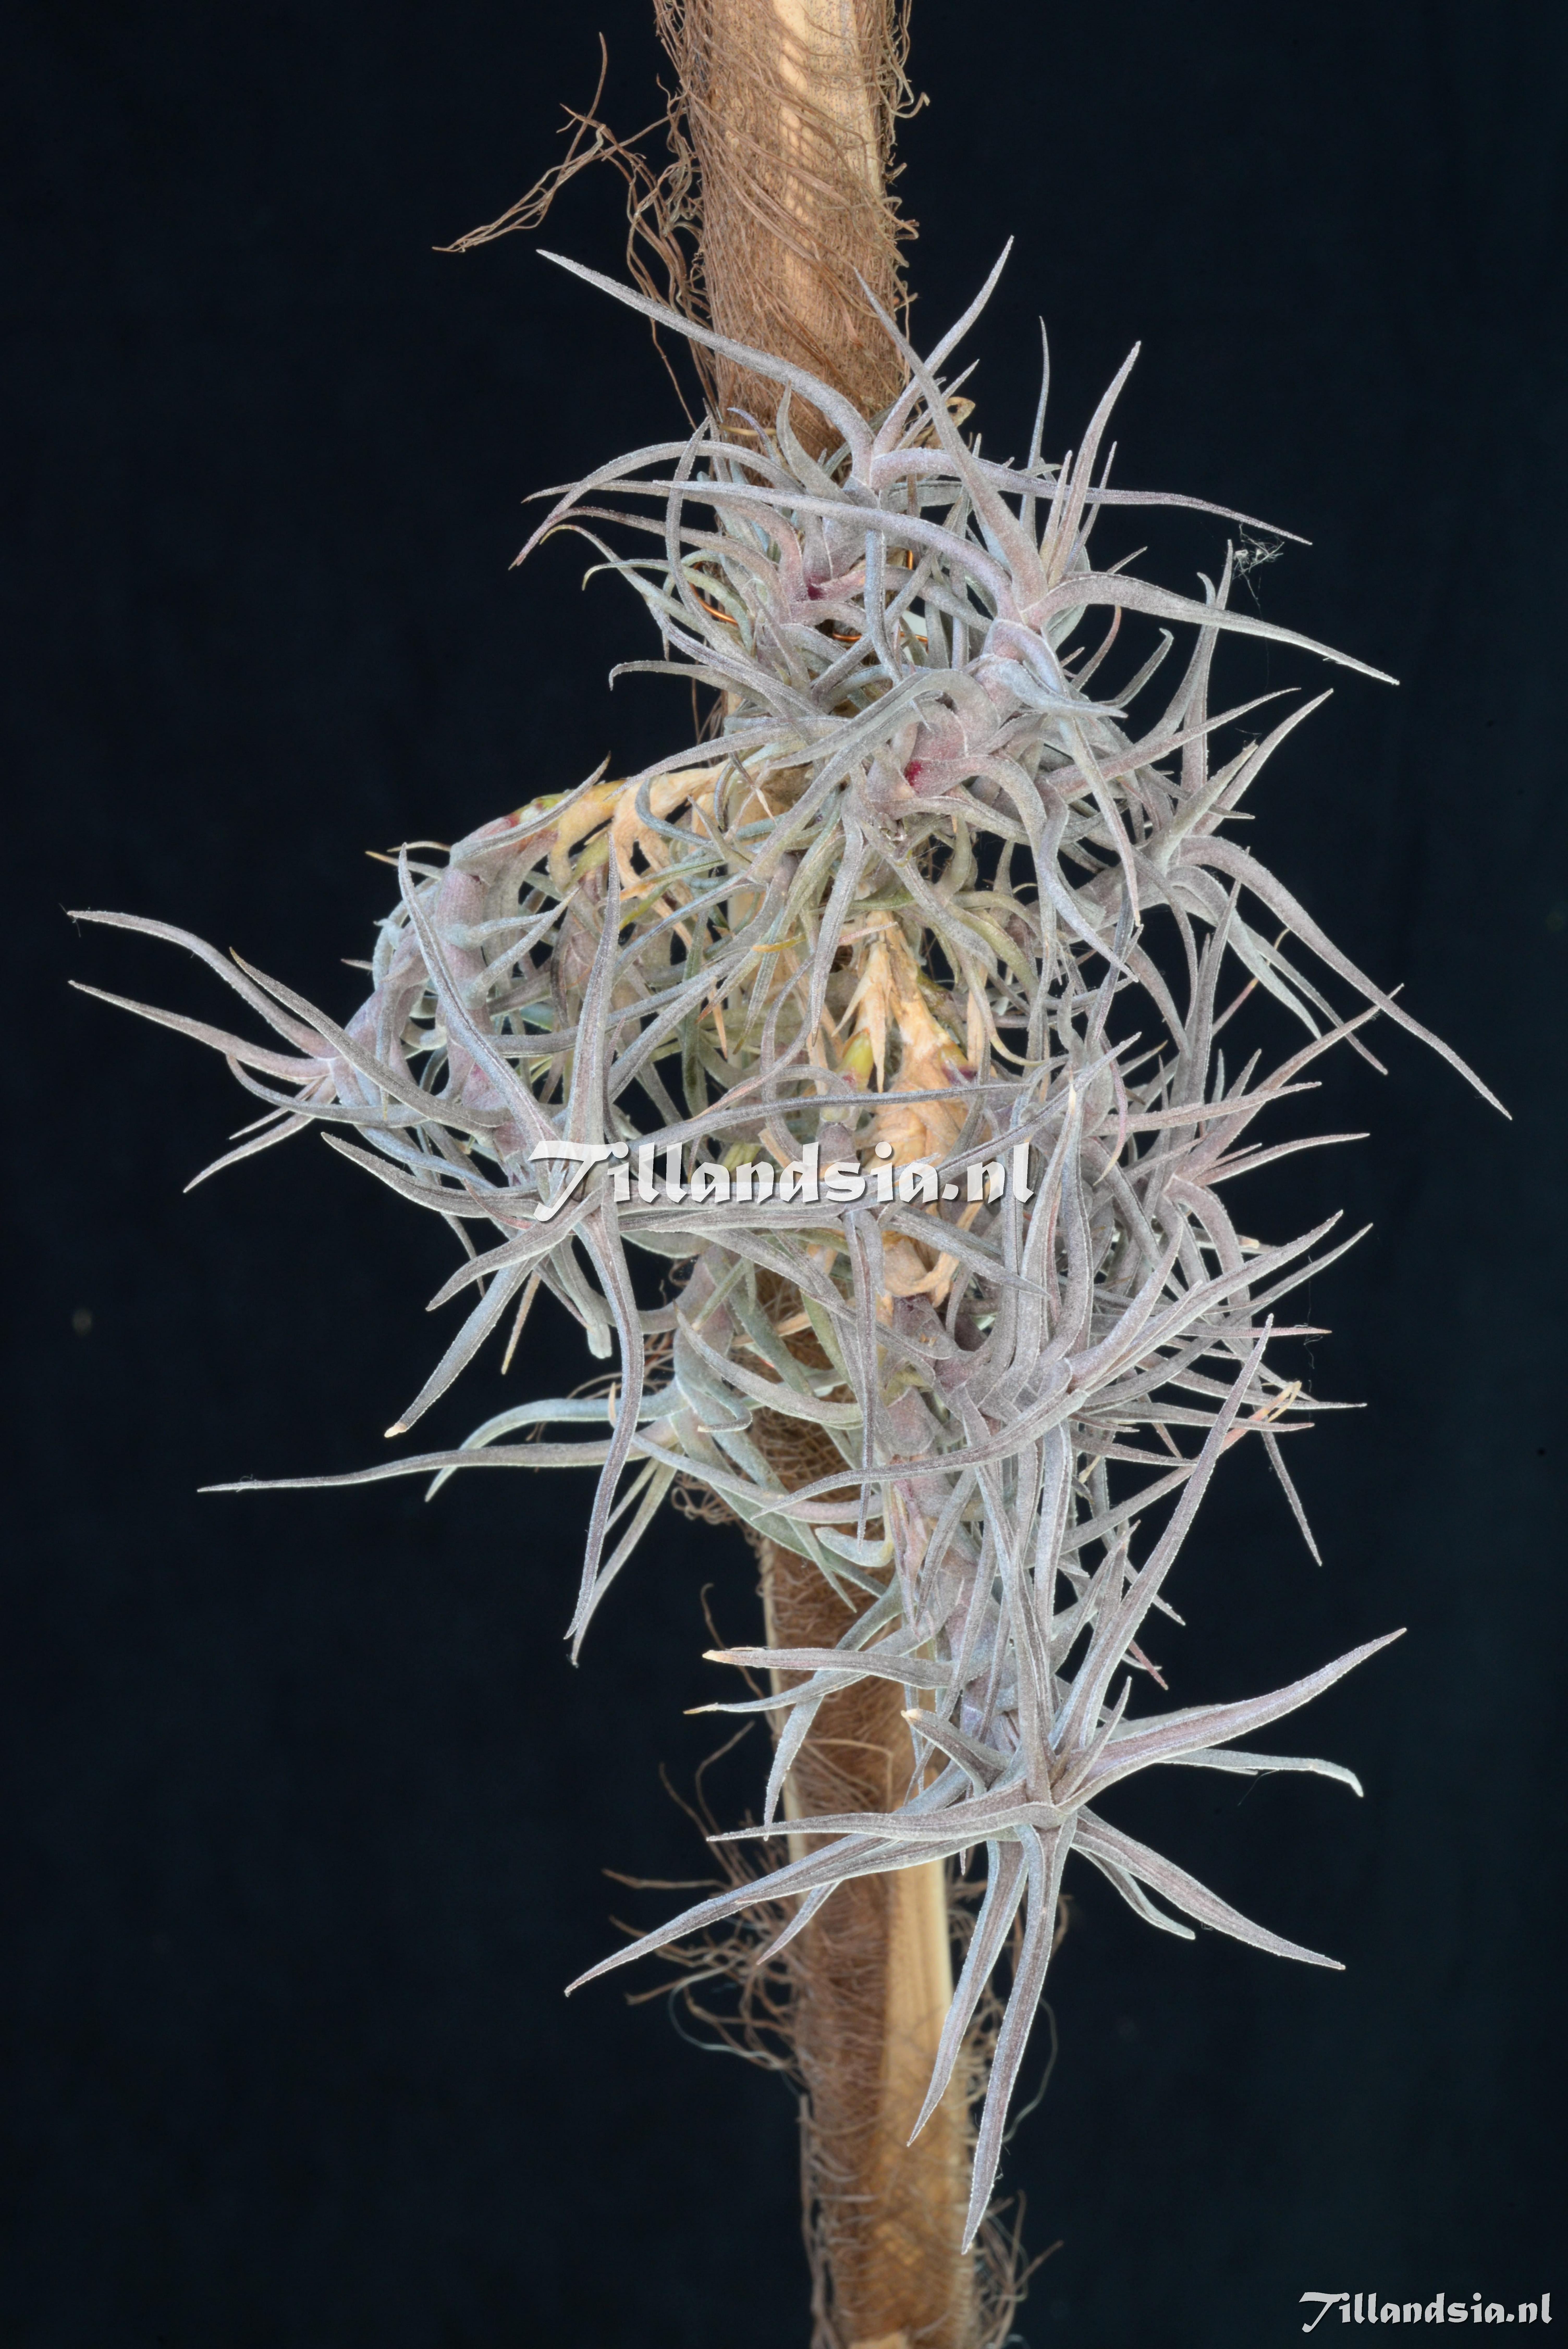 2519 Tillandsia diaguitensis Small/Succulent form